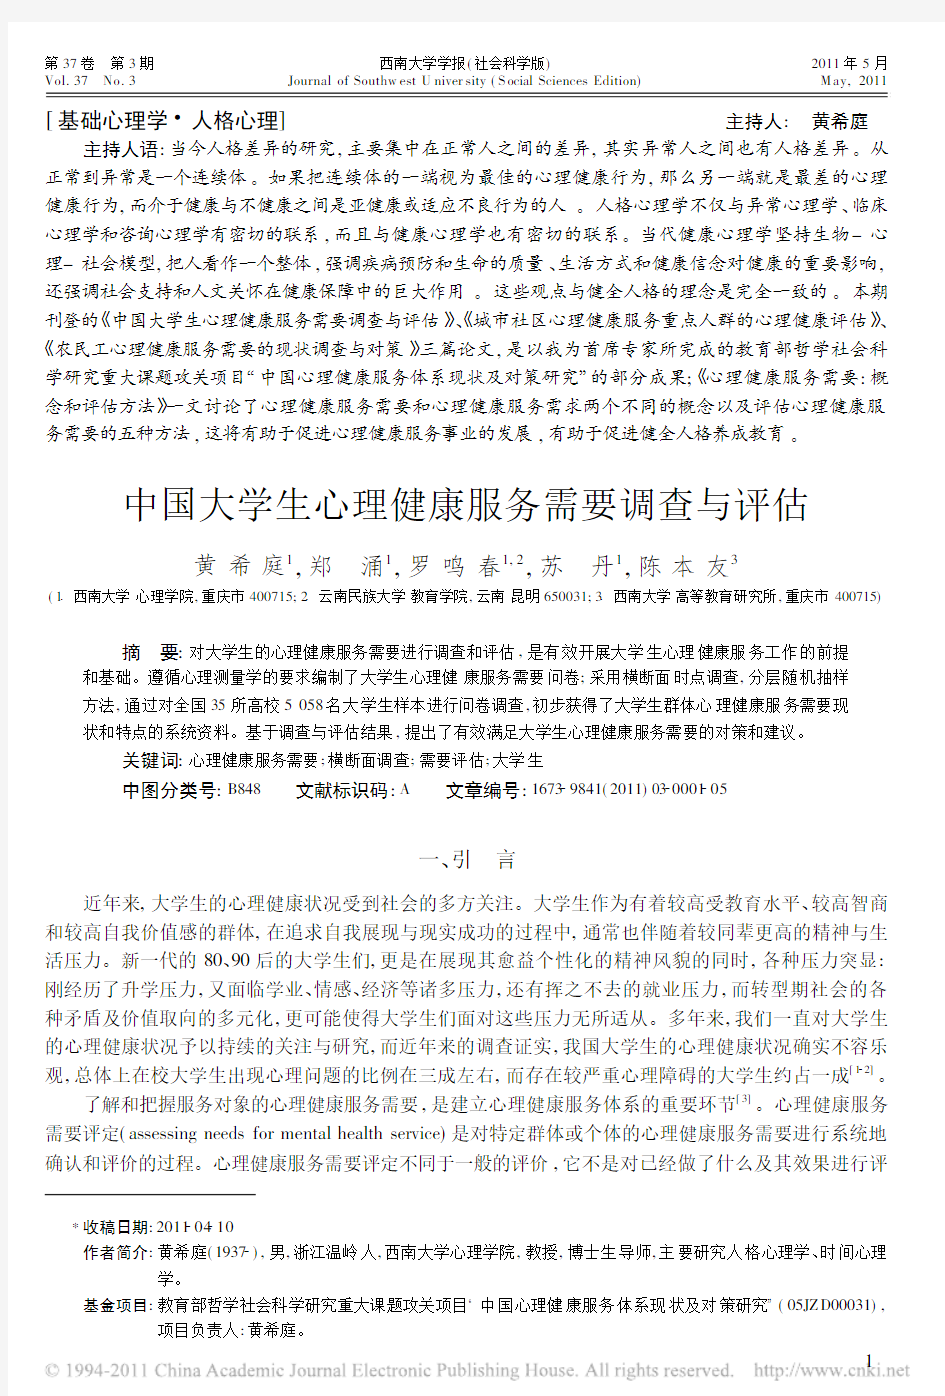 中国大学生心理健康服务需要调查与评估_黄希庭